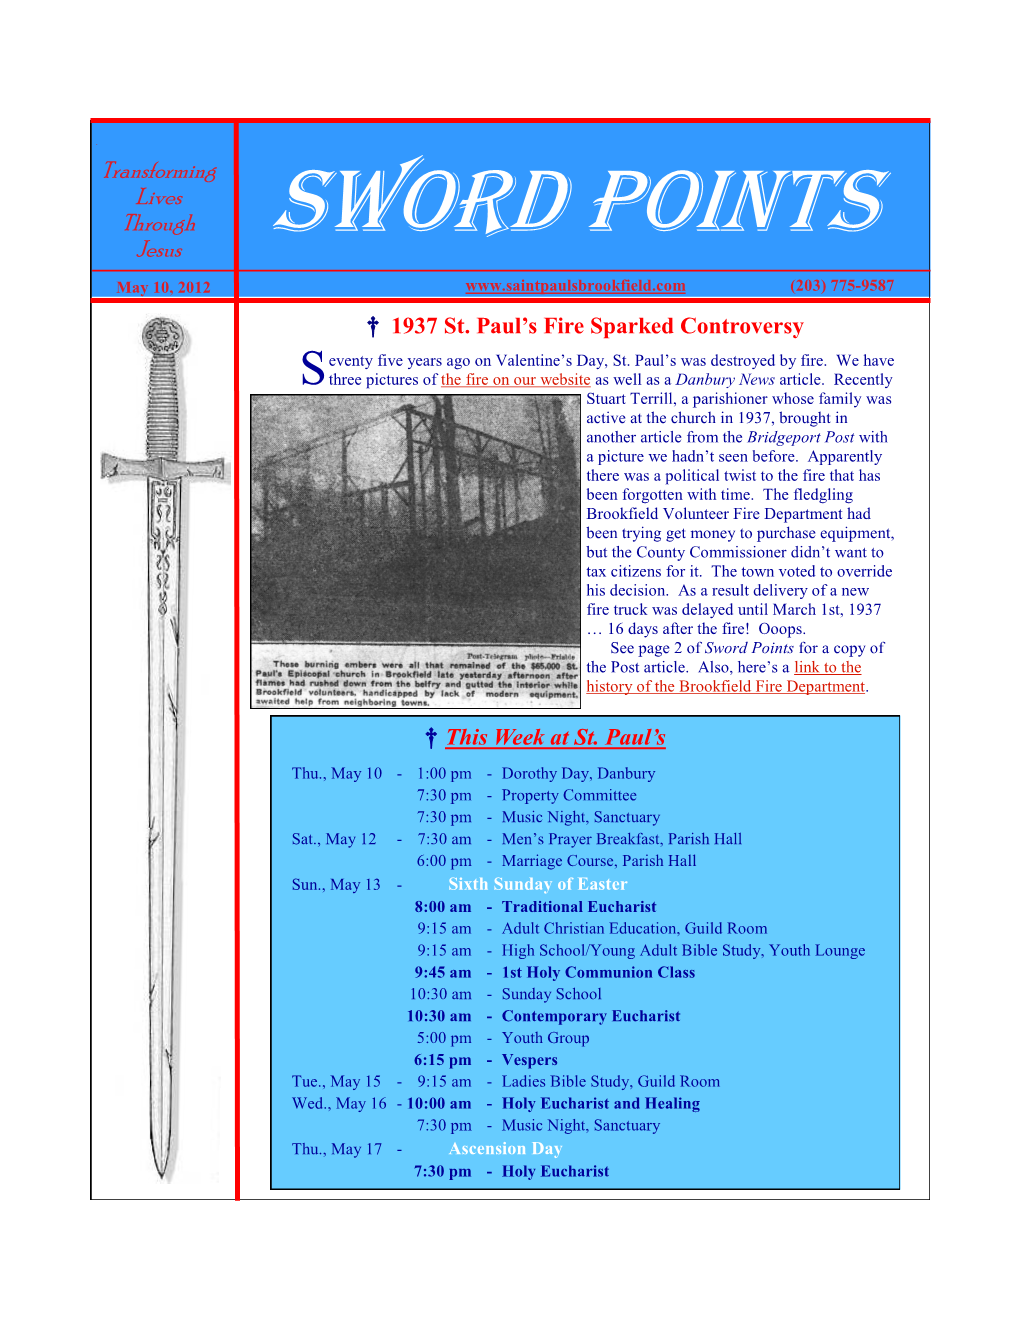 Sword Points Jesus